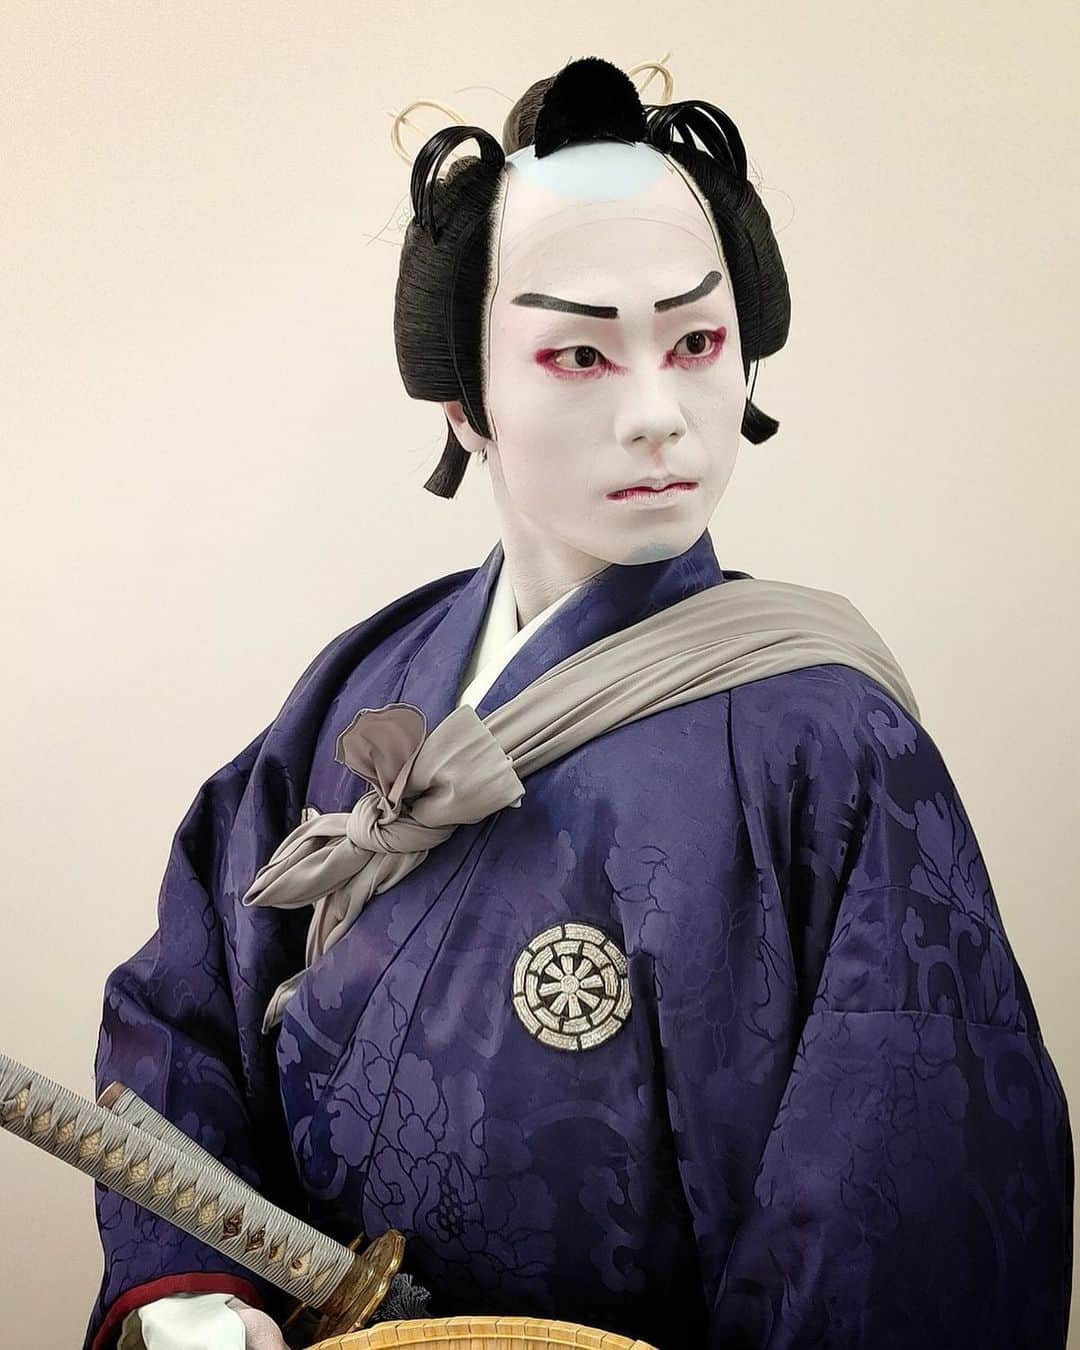 市川團子のインスタグラム：「皆様、こんにちは。 市川團子でございます。  先日、「立川立飛歌舞伎特別公演」に出演させていただきました。  沢山の皆様のご来場、誠にありがとうございました。 心より御礼申し上げます。  #立川立飛歌舞伎特別公演 #歌舞伎 #kabuki #市川團子」